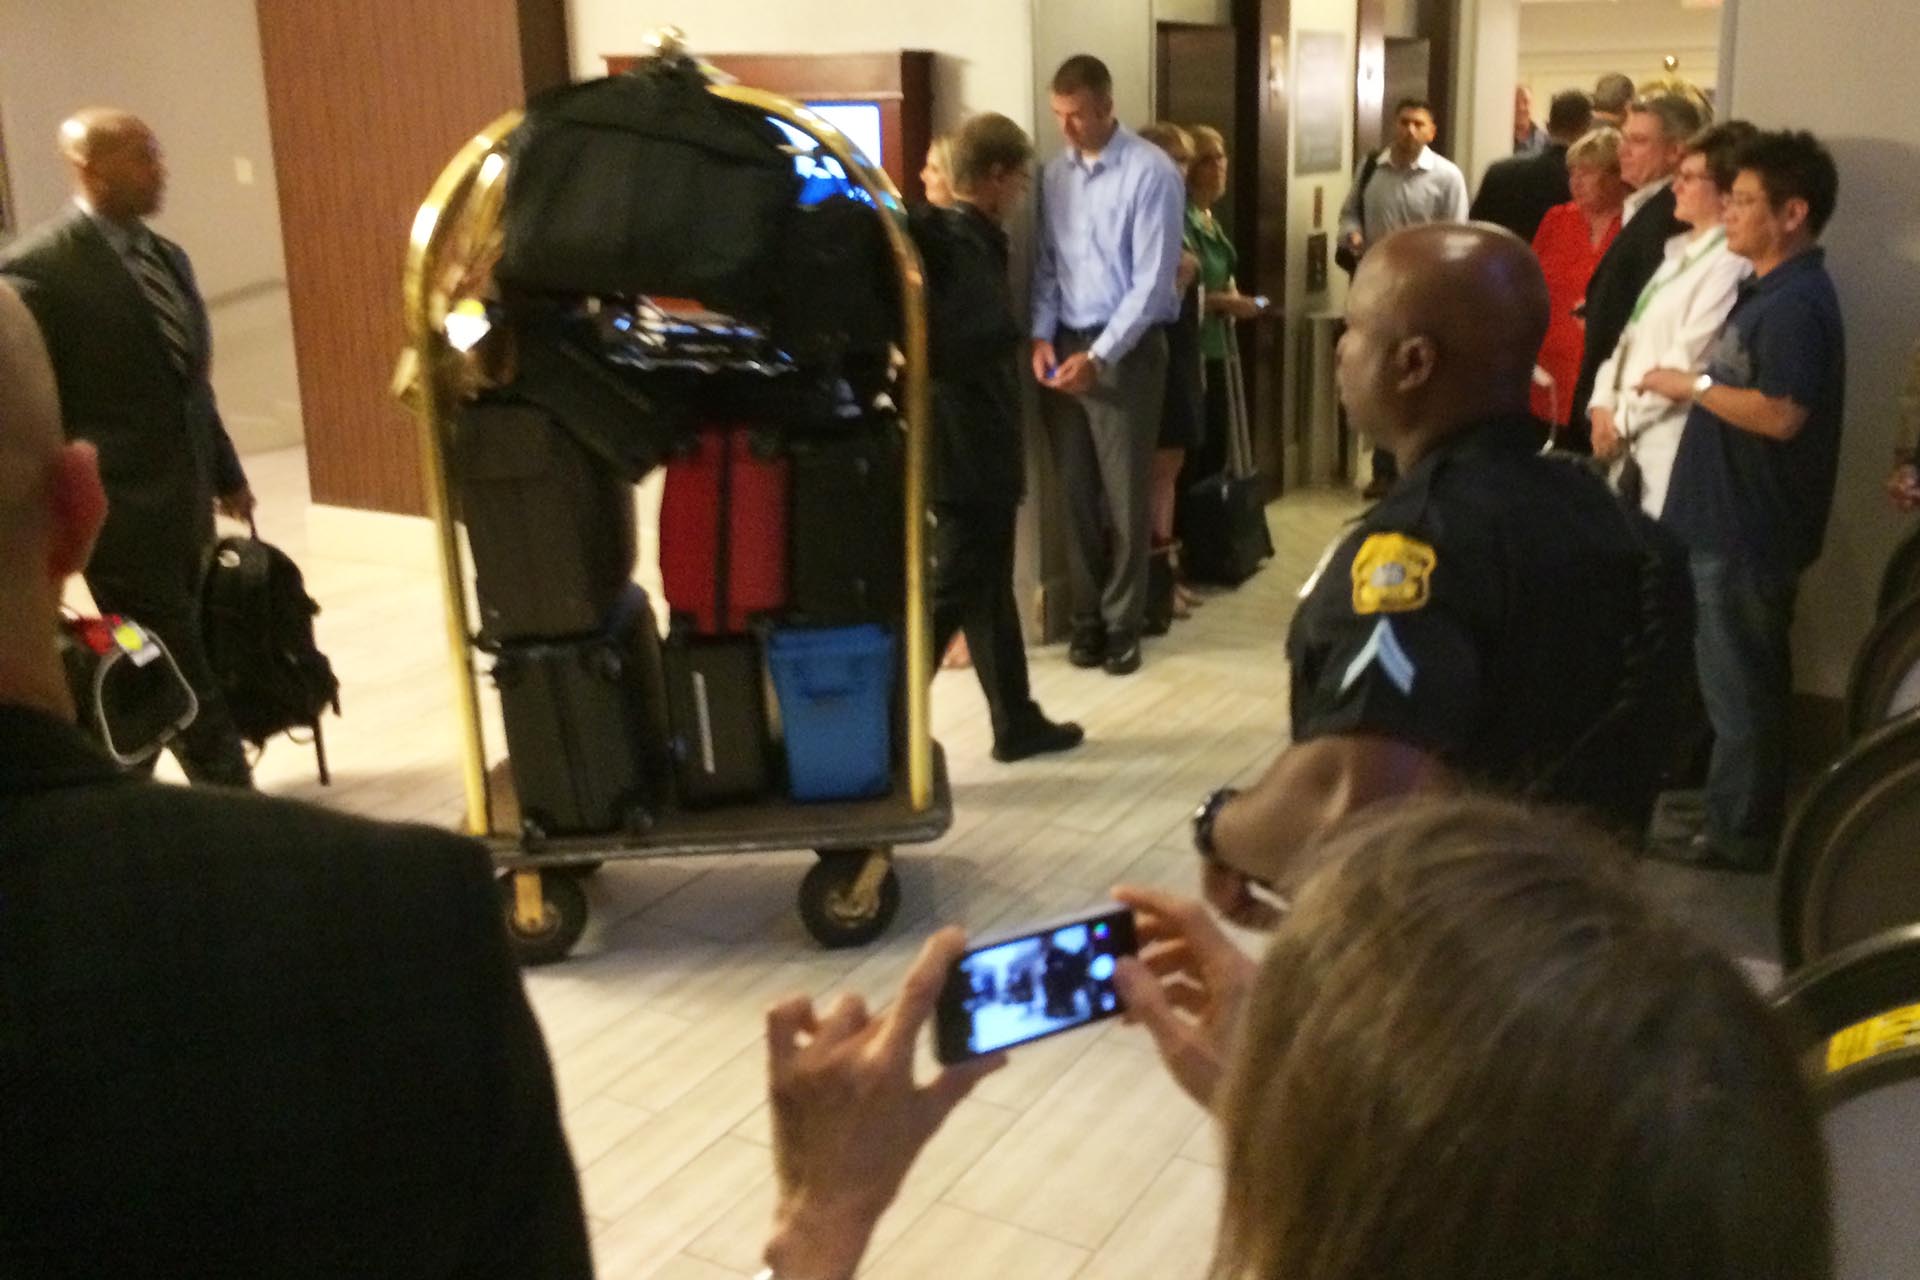 Obamas luggage at 2014 Gathering